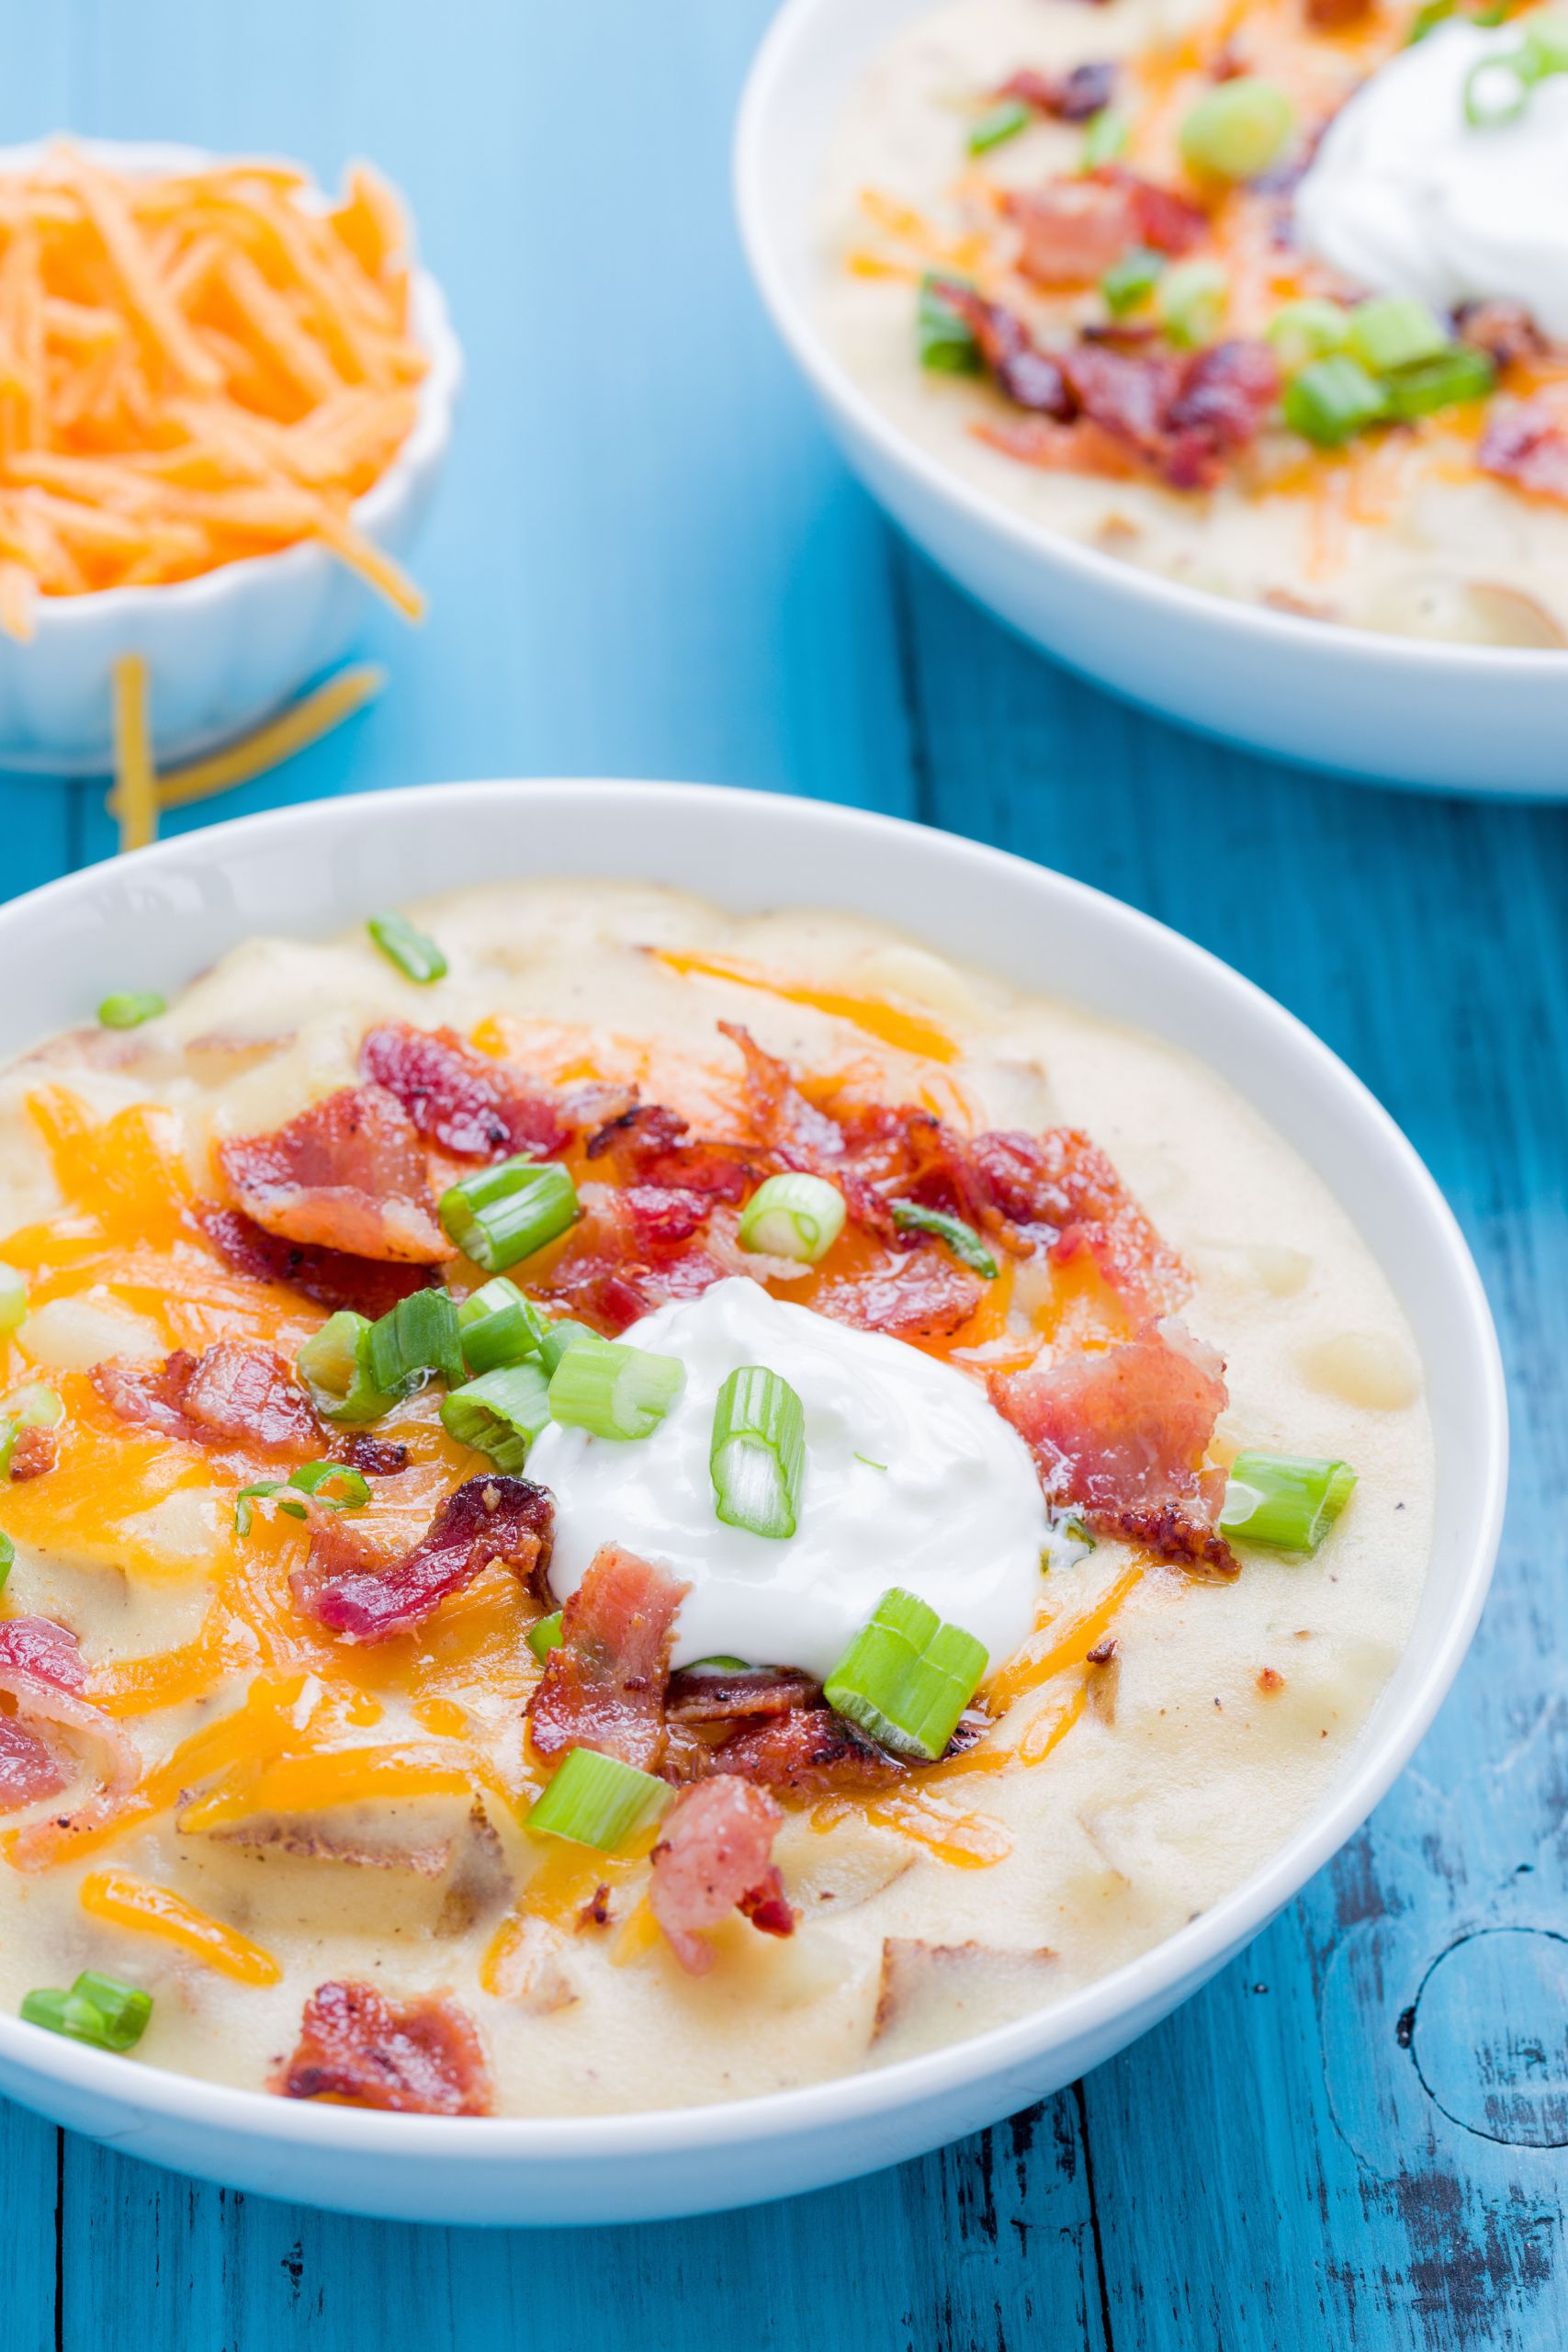 Easy Potato Soup Recipes
 20 Best Potato Soup Recipes Easy Homemade Potato Soups